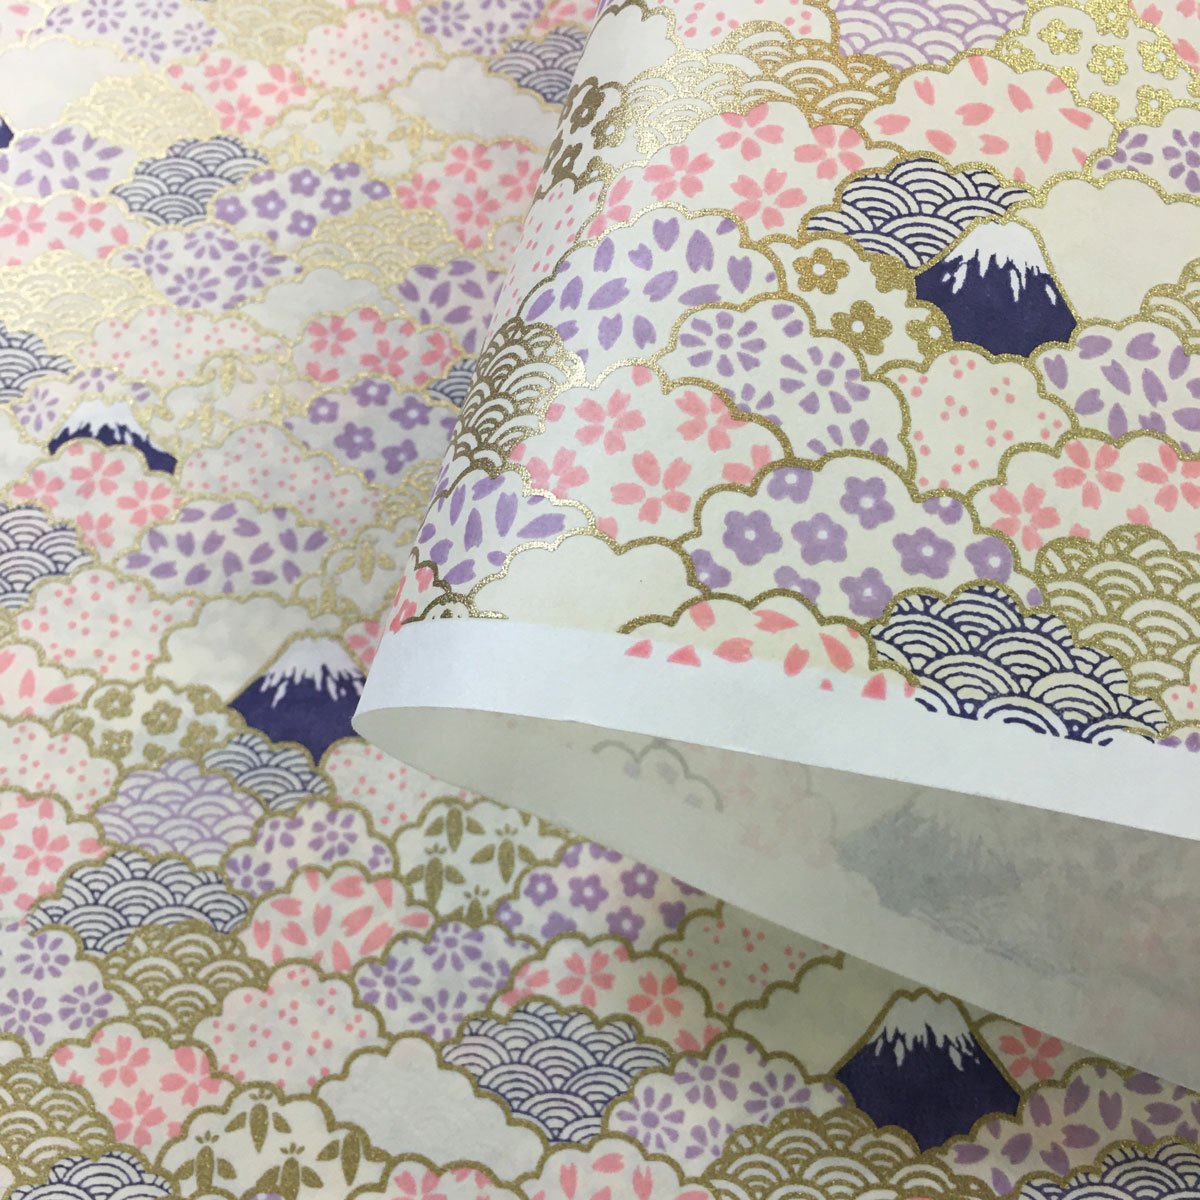  блестящий ... японская бумага гора Фудзи .. симпатичный маленький цветок неотбеленная ткань незначительный розовый незначительный бледно-голубой большой размер примерно 63x93cm